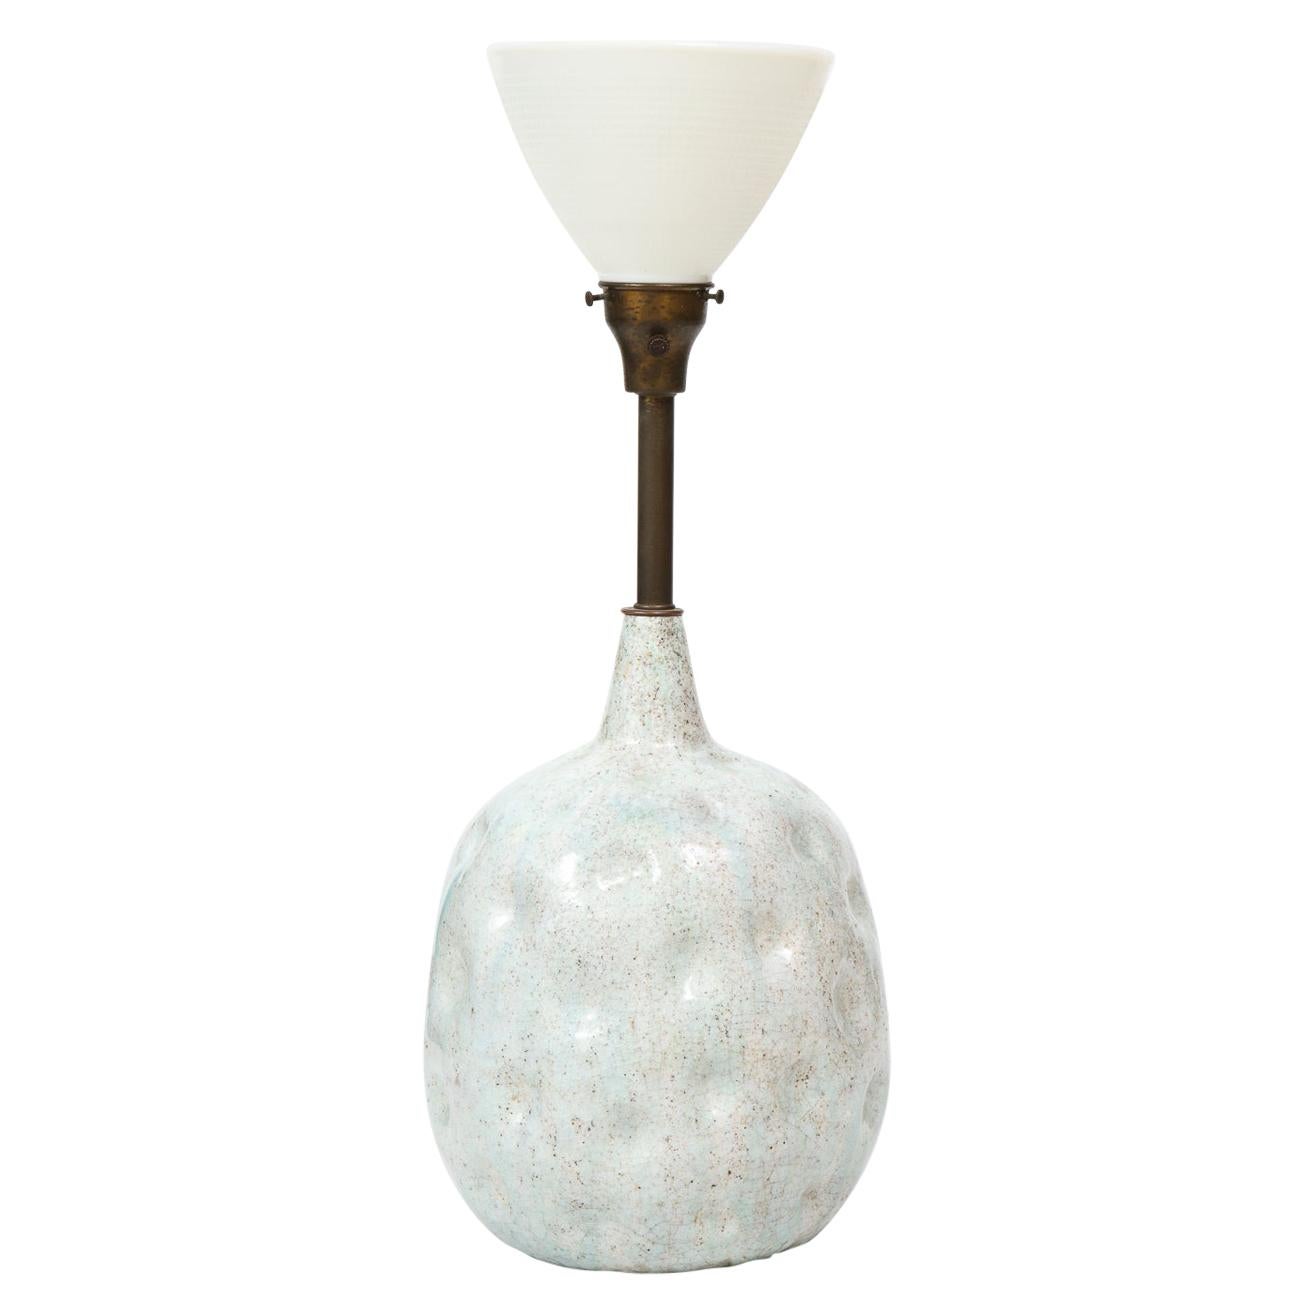 Marcello Fantoni Dimpled Ceramic Lamp